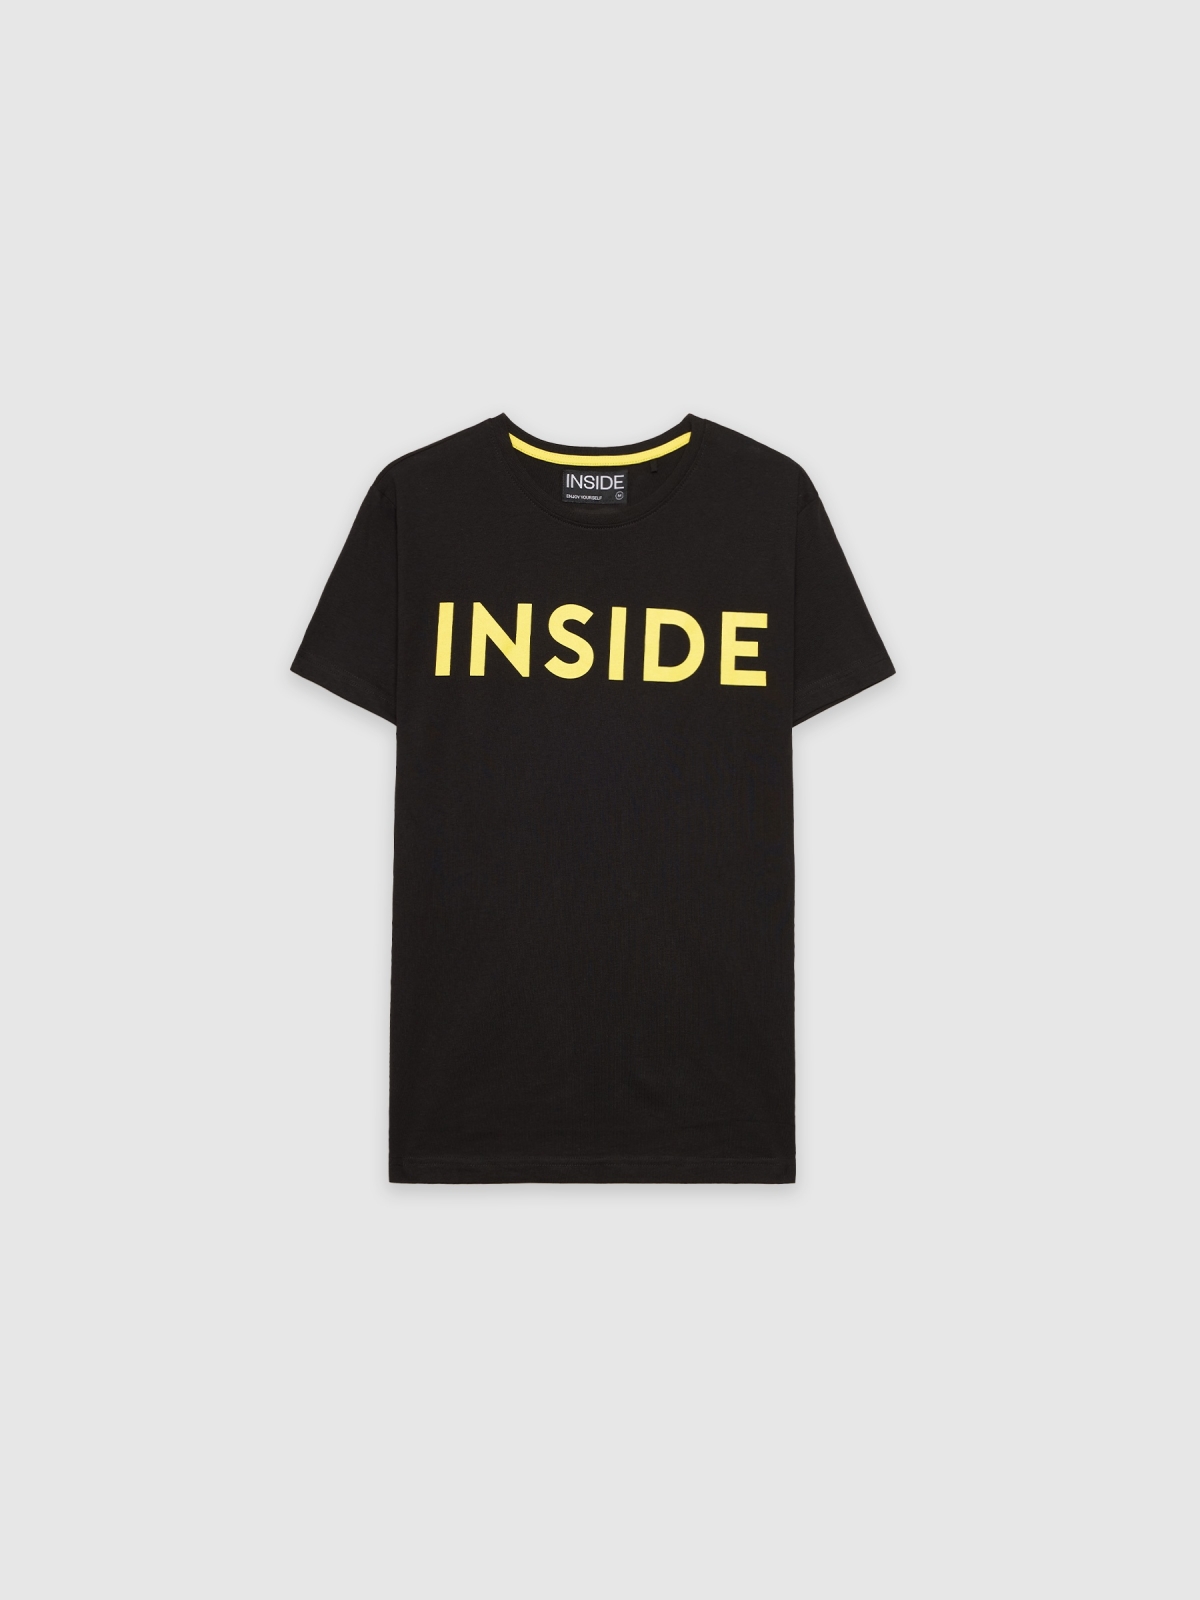  T-shirt básica "INSIDE preto